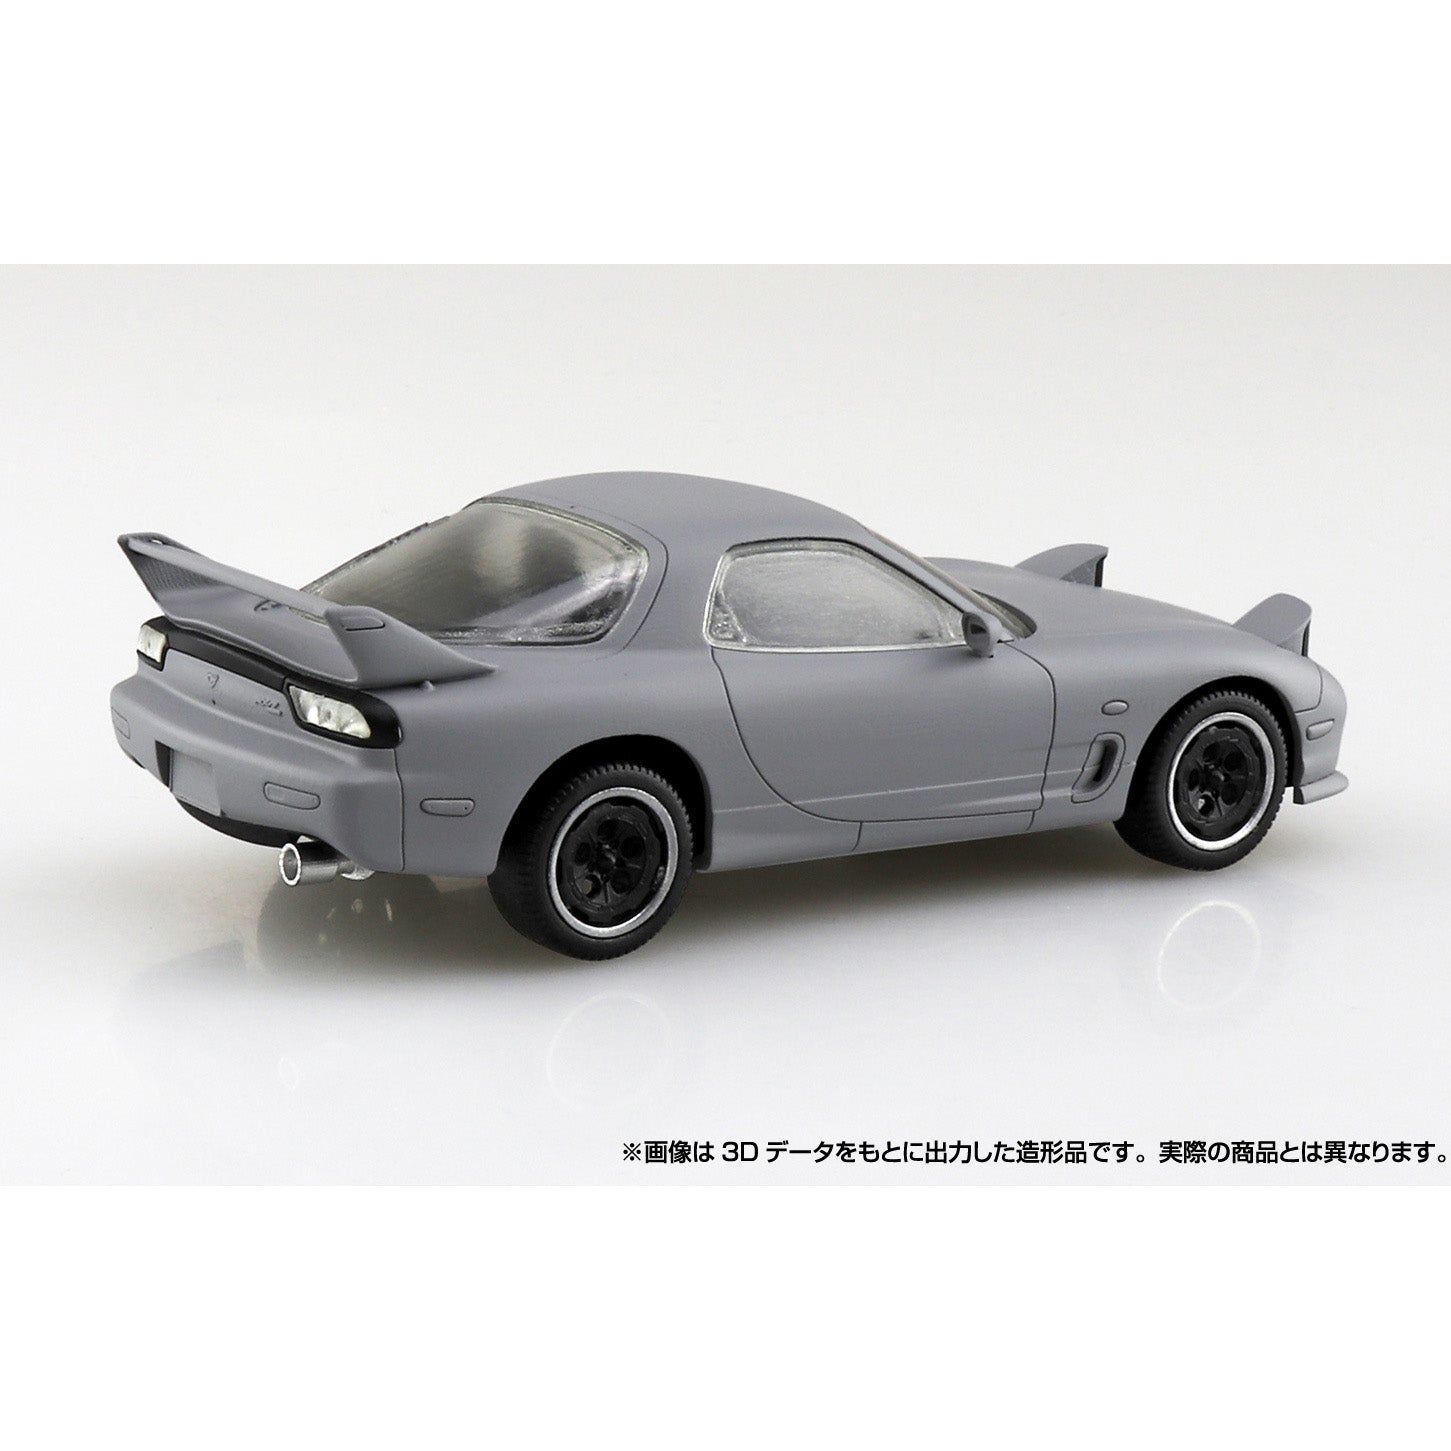 Aoshima - The Snap Kit No. CM2 - Initial D - Keisuke Takahashi's FD Model Kit (1/32 Scale) - Marvelous Toys